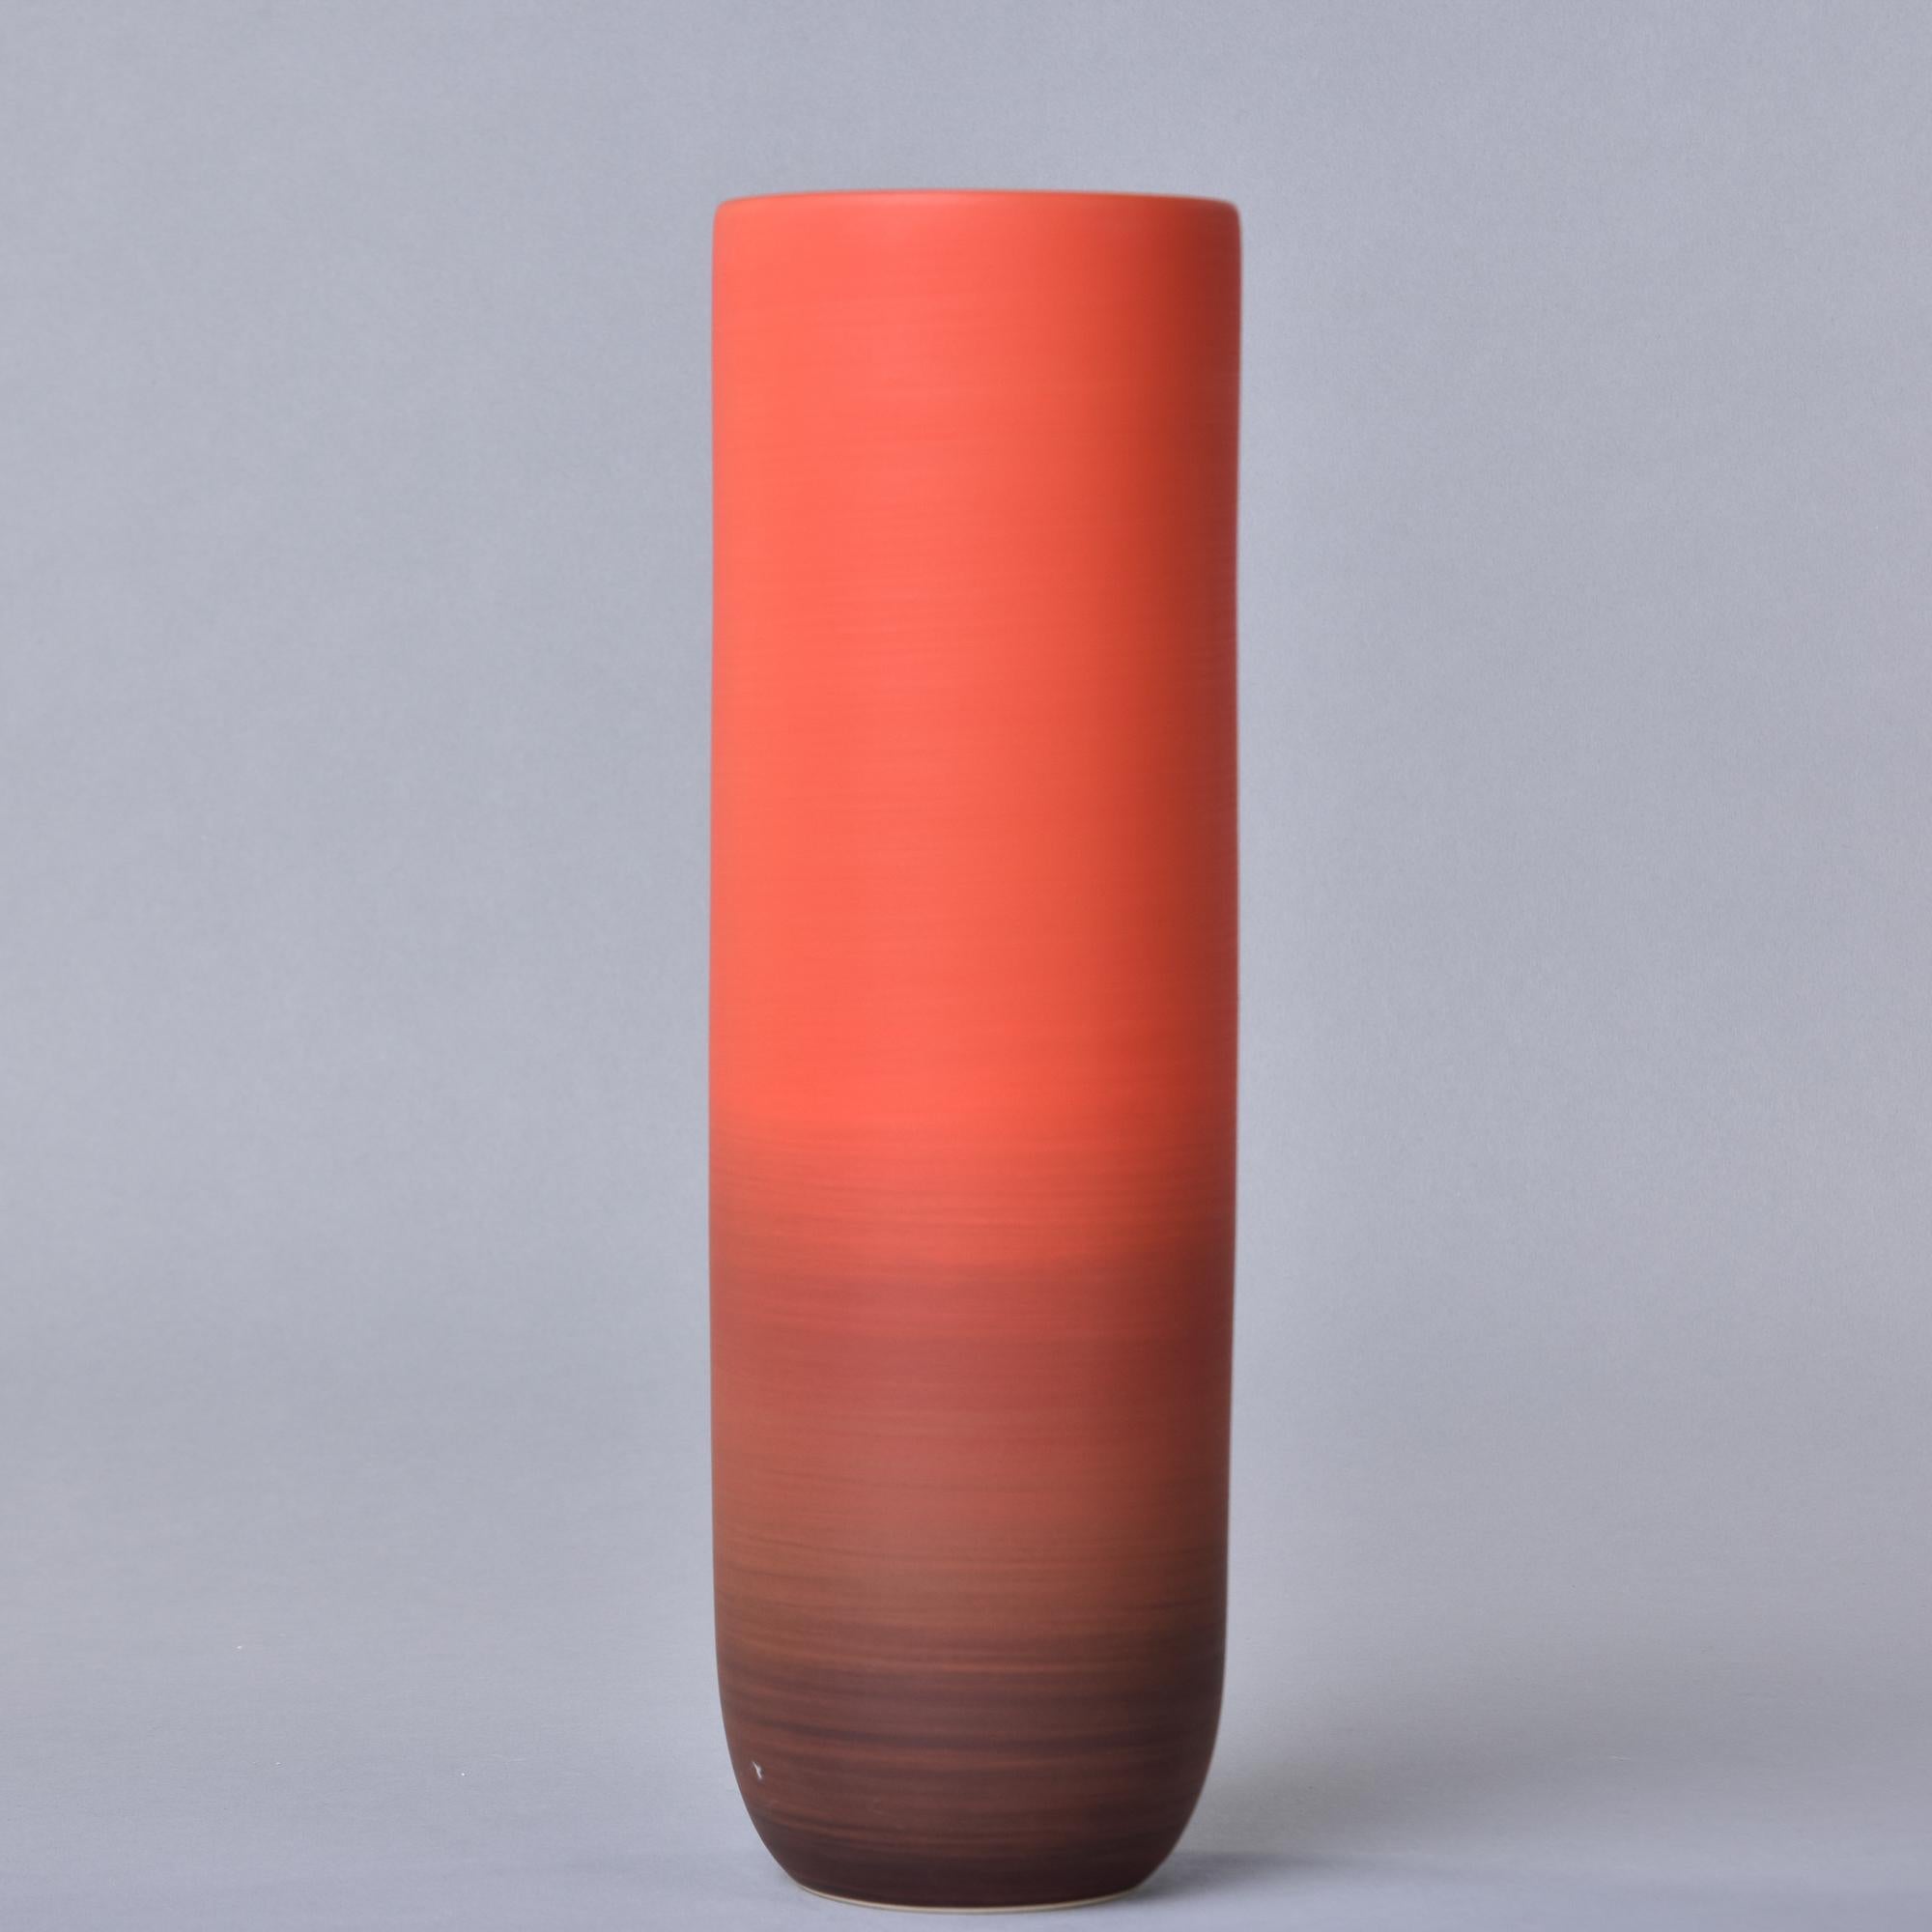 New Rina Menardi Canna 2 Vase in Poppy Glaze In New Condition For Sale In Troy, MI